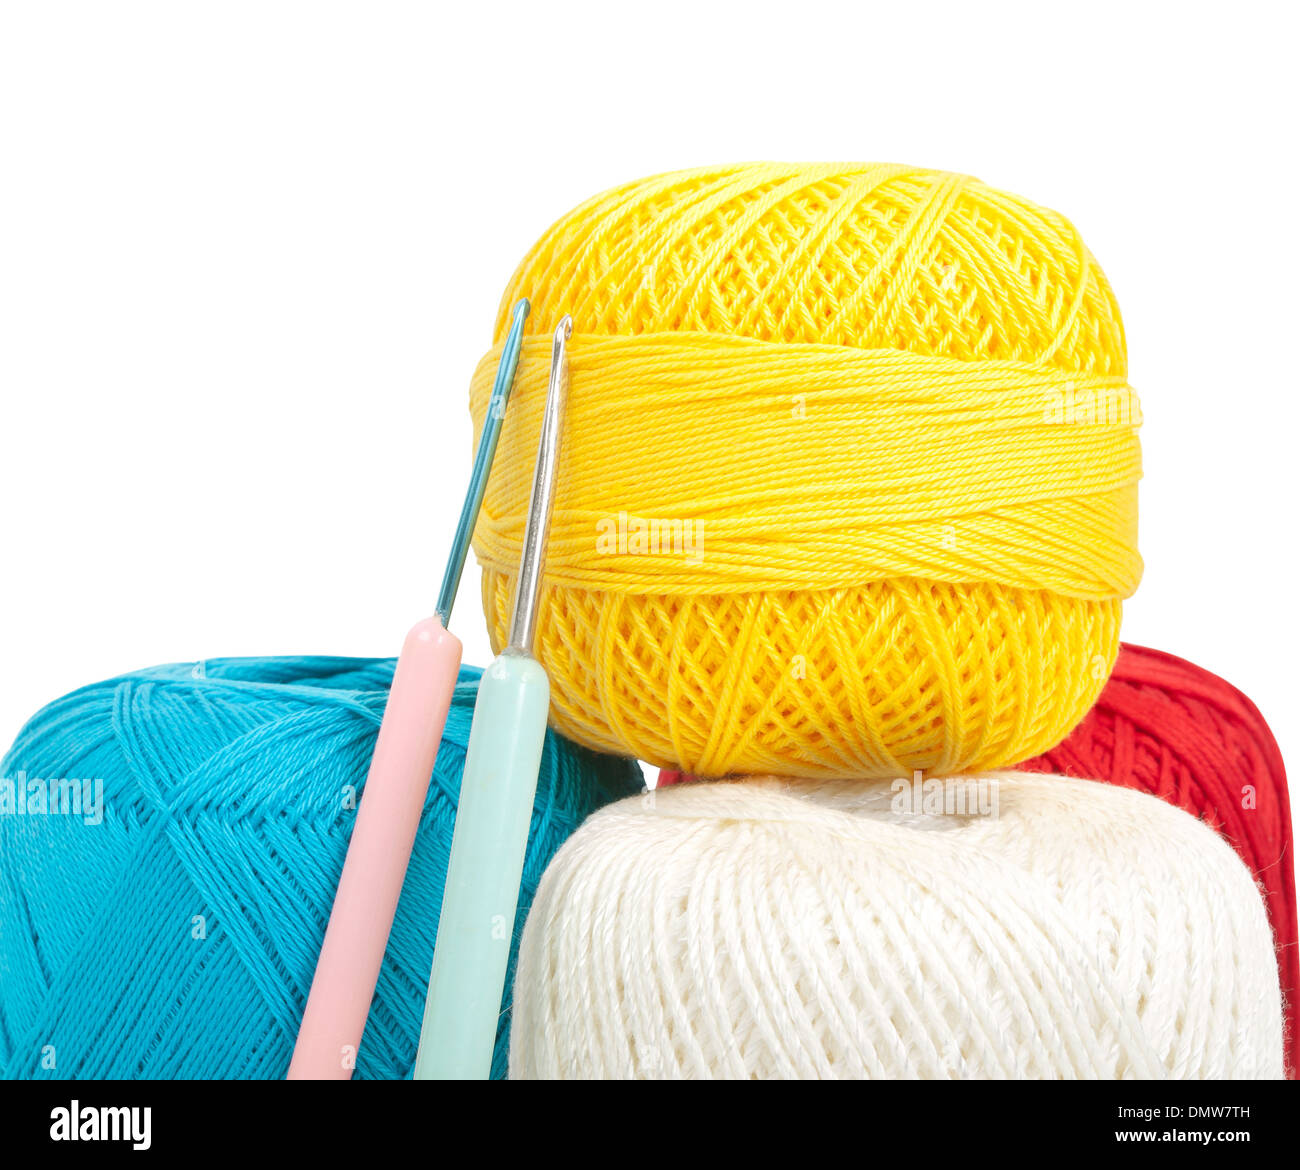 Aiguilles crochet et du fil à coudre de différentes couleurs Banque D'Images